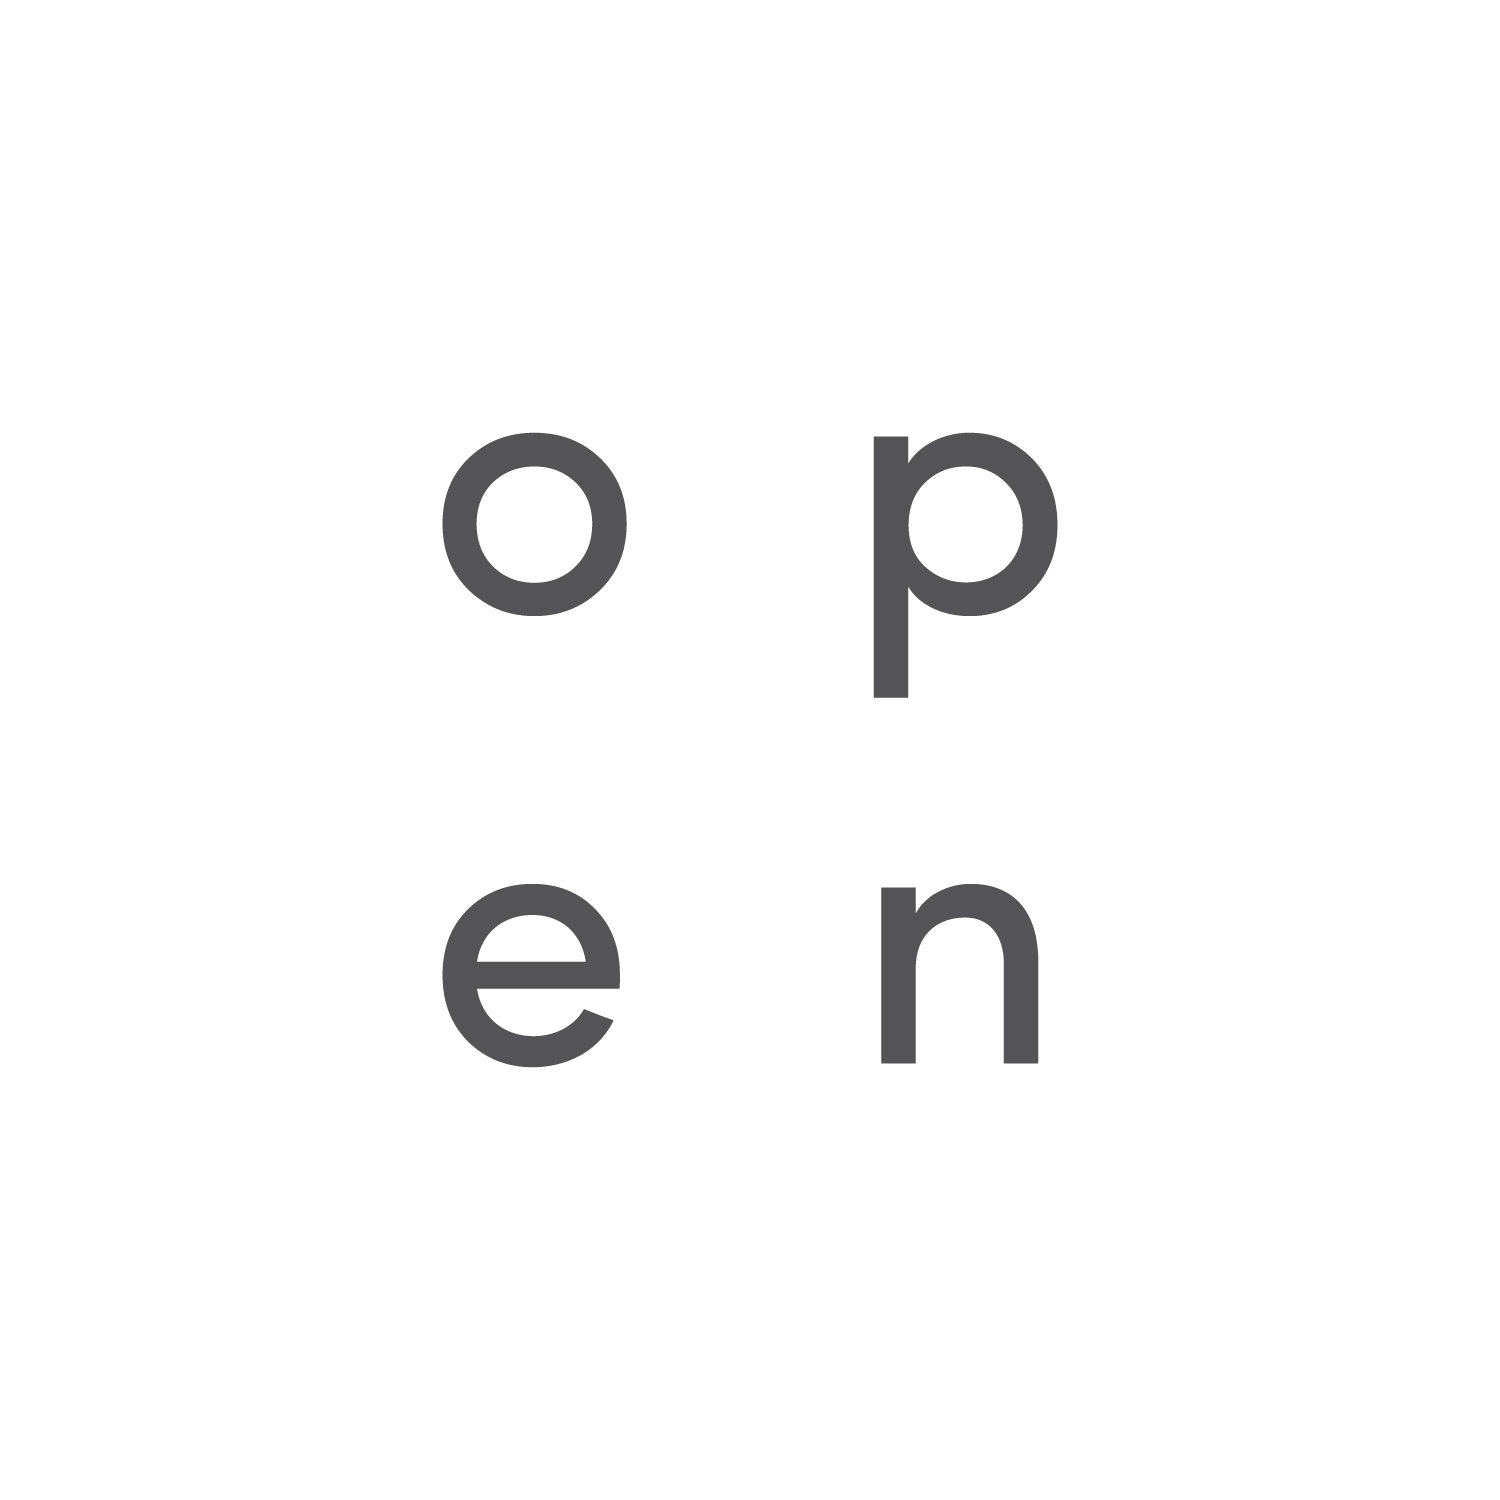 Open Studio Private Limited logo